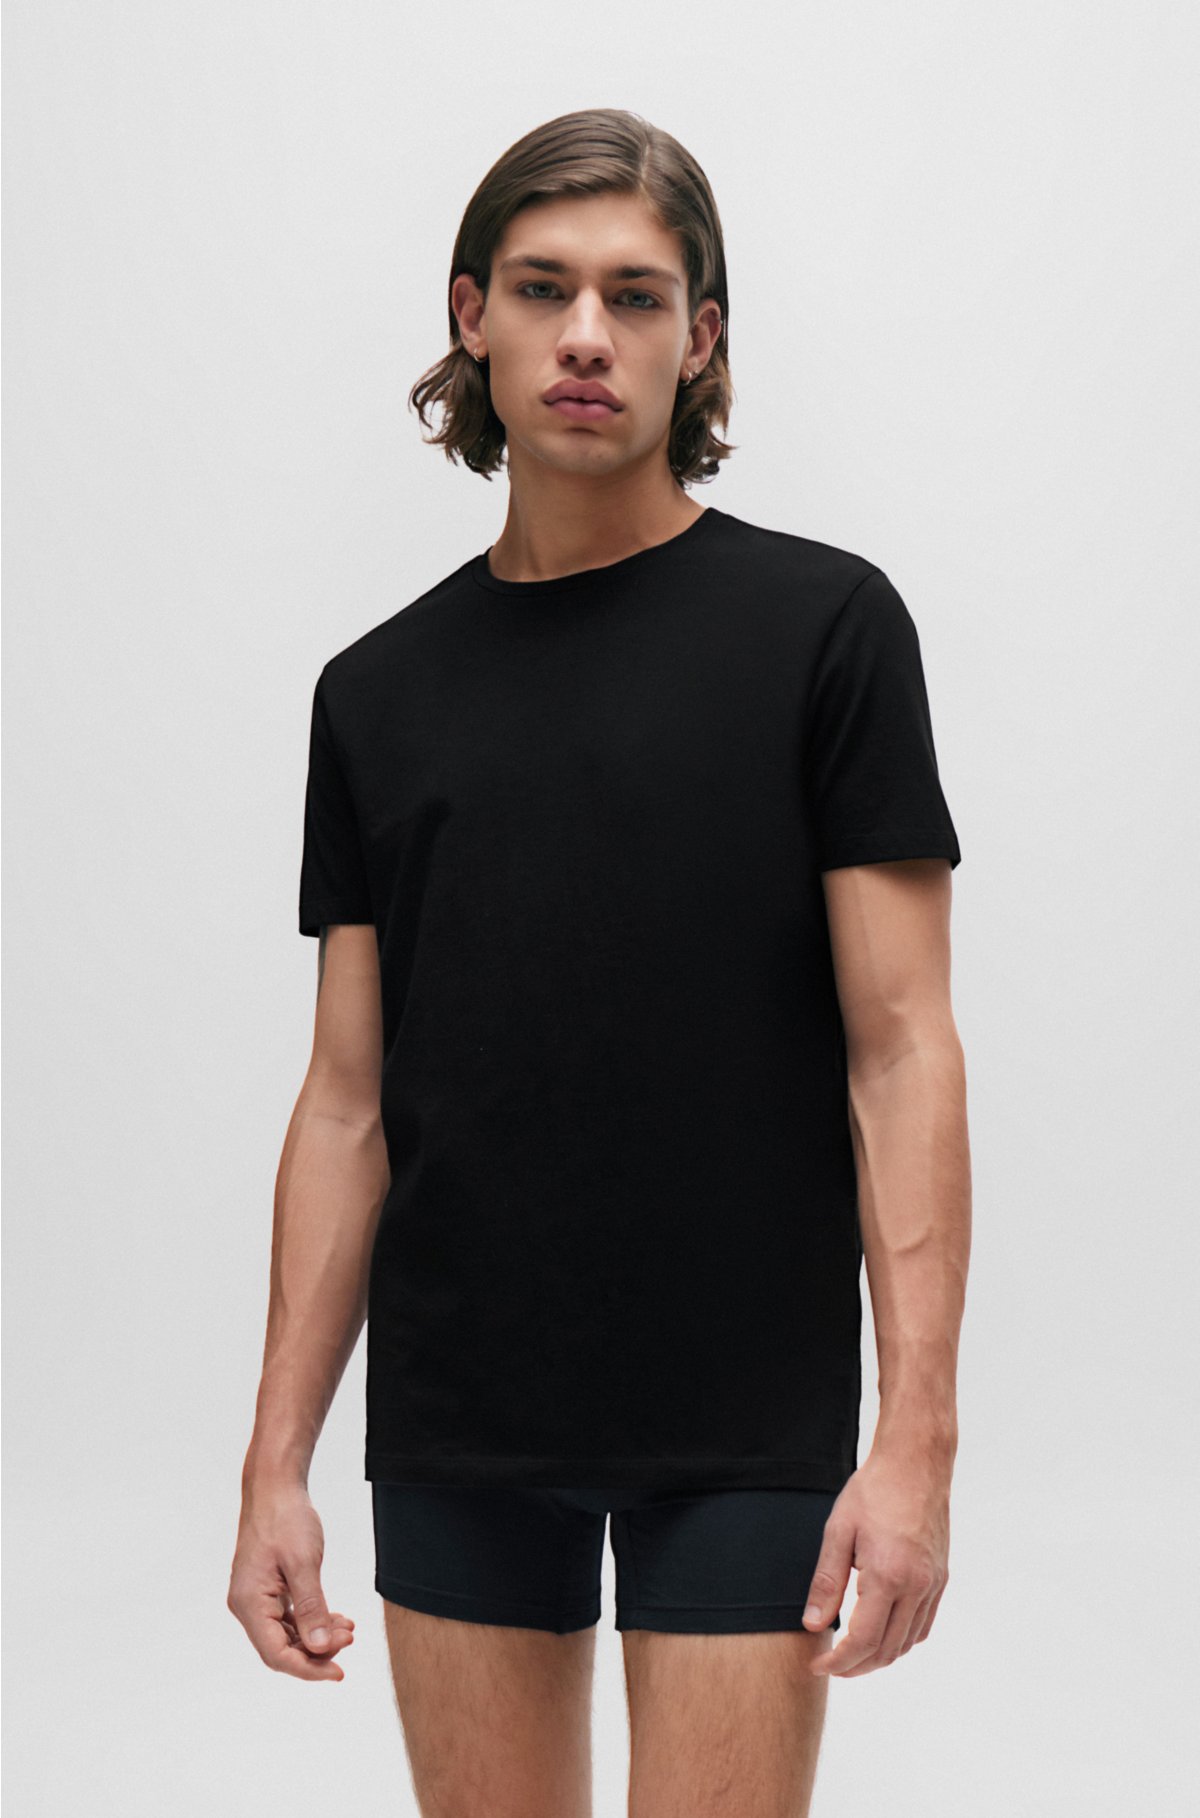 T-shirt homme Fashion coton longues fibres ·coton prérétréci 2 fois